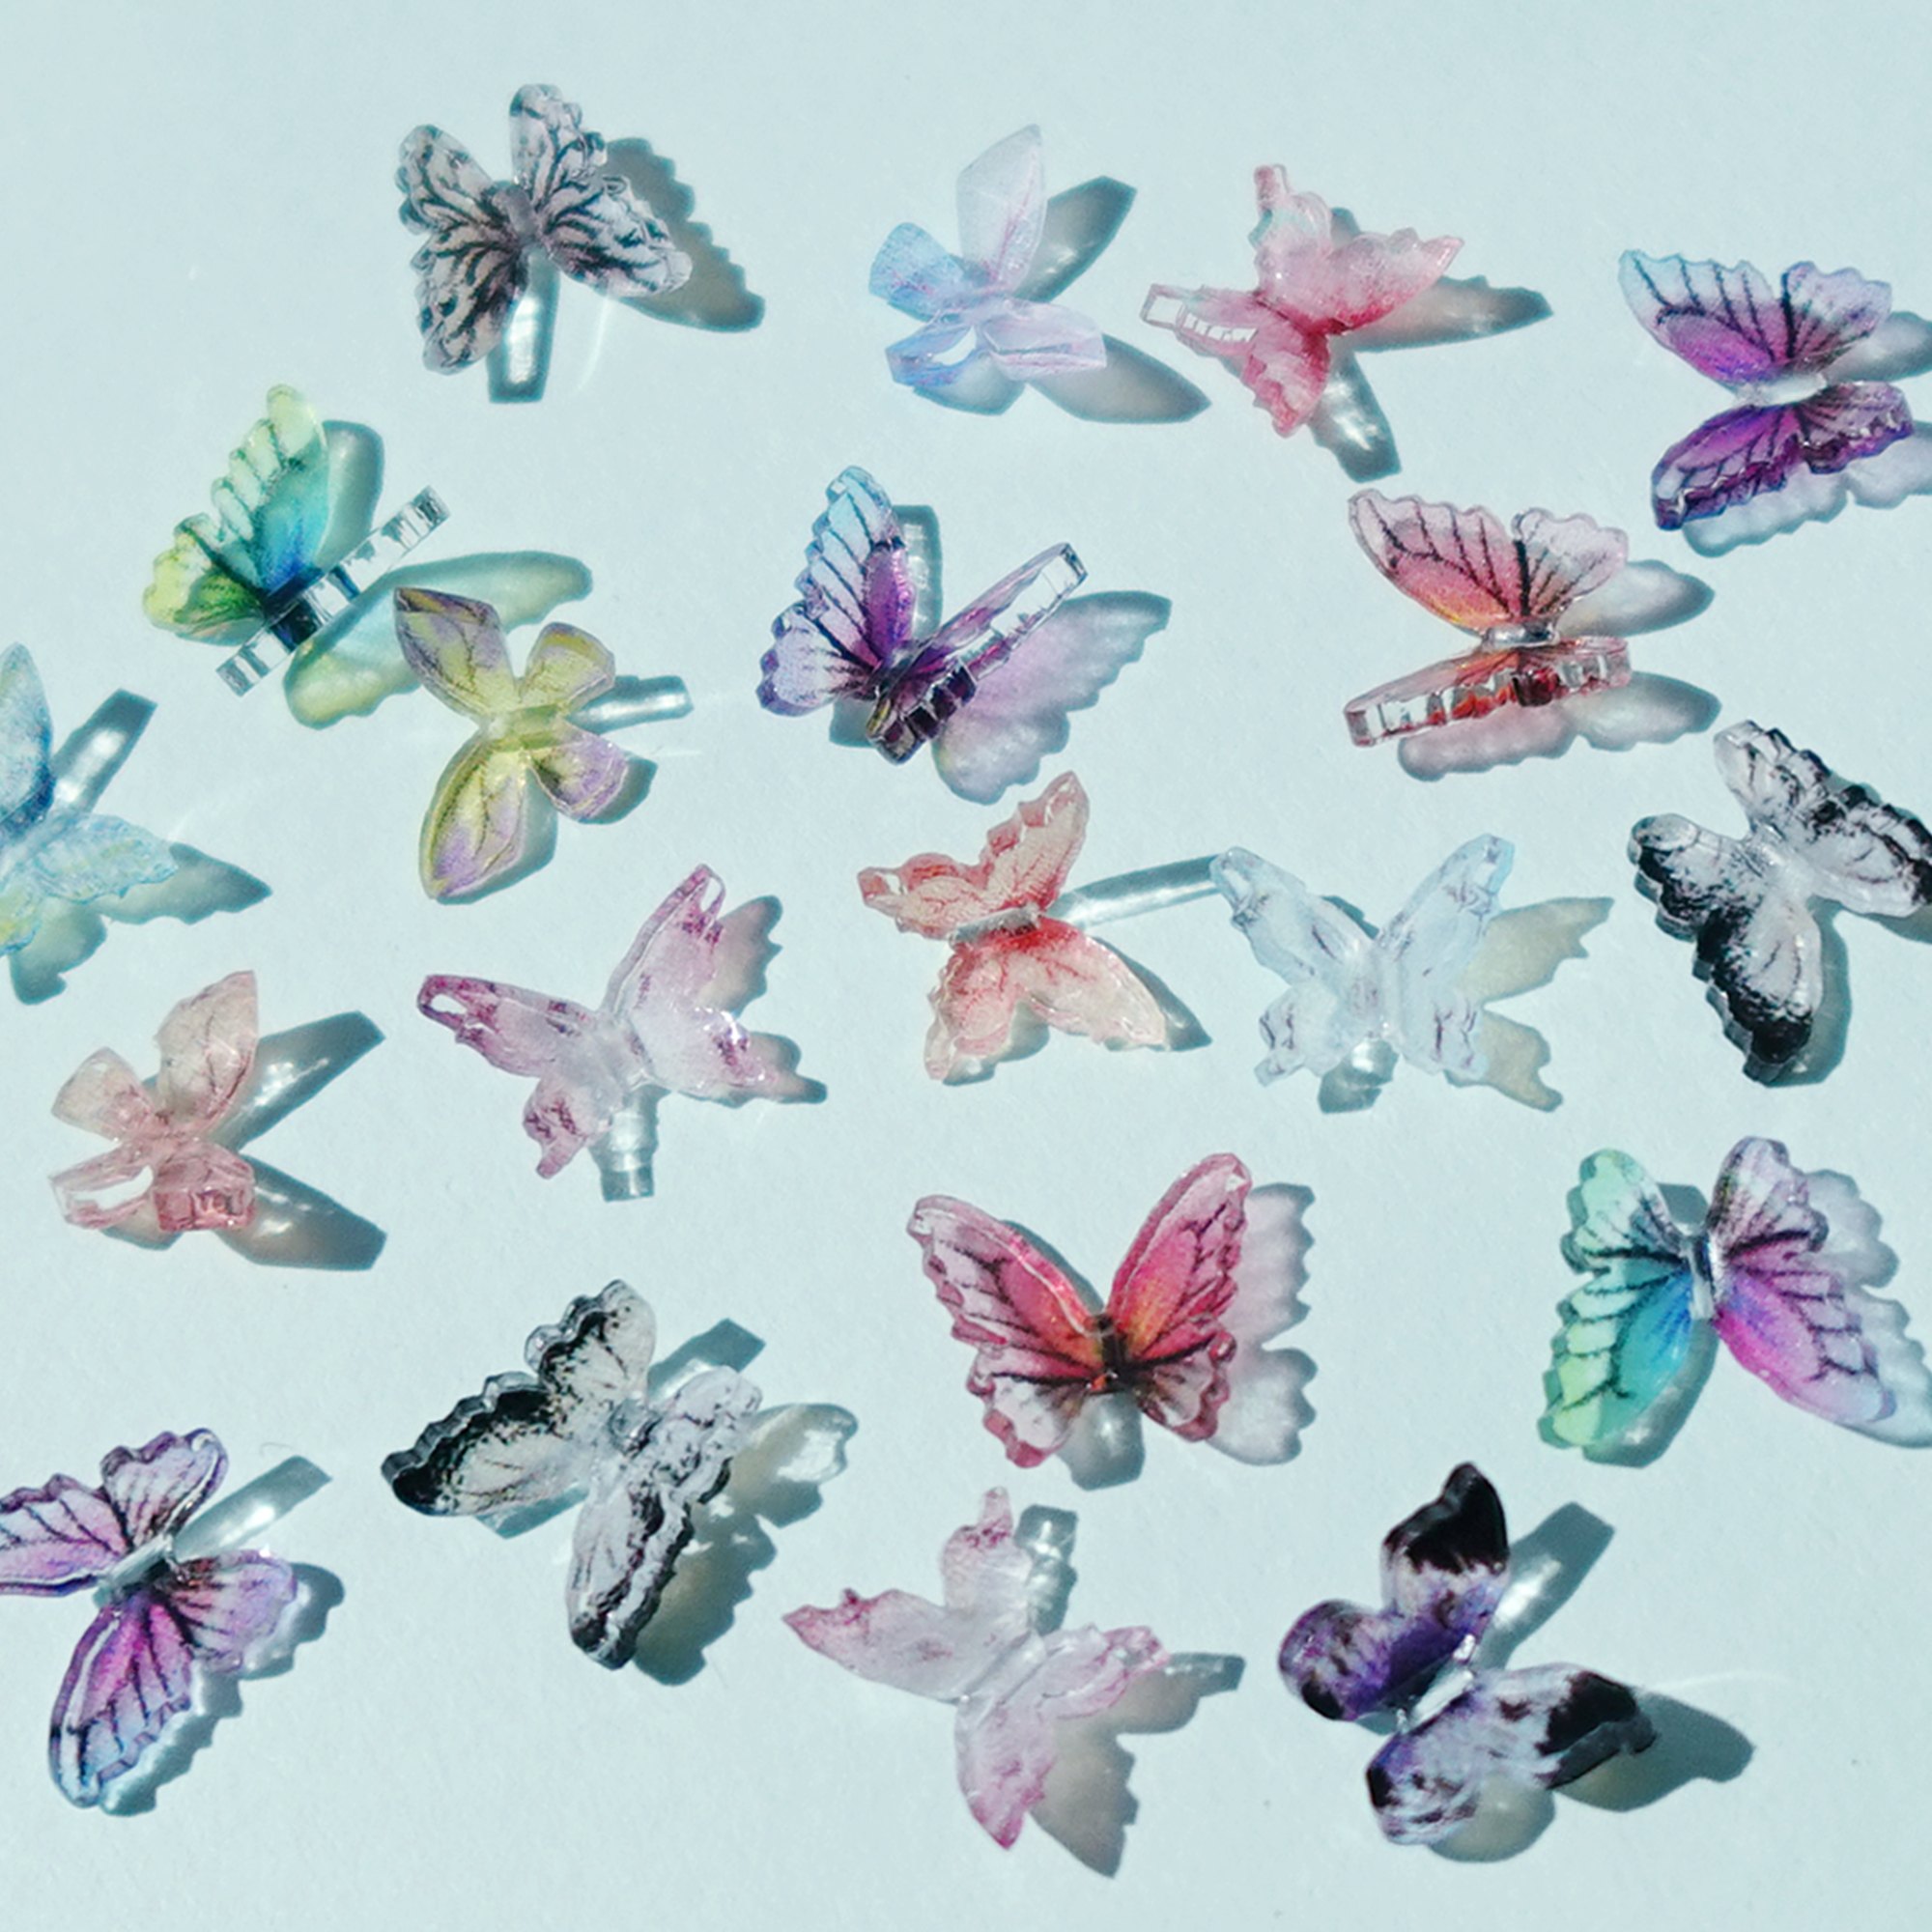 3D 입체 나비 20마리 파츠 / 네일아트, 레진아트